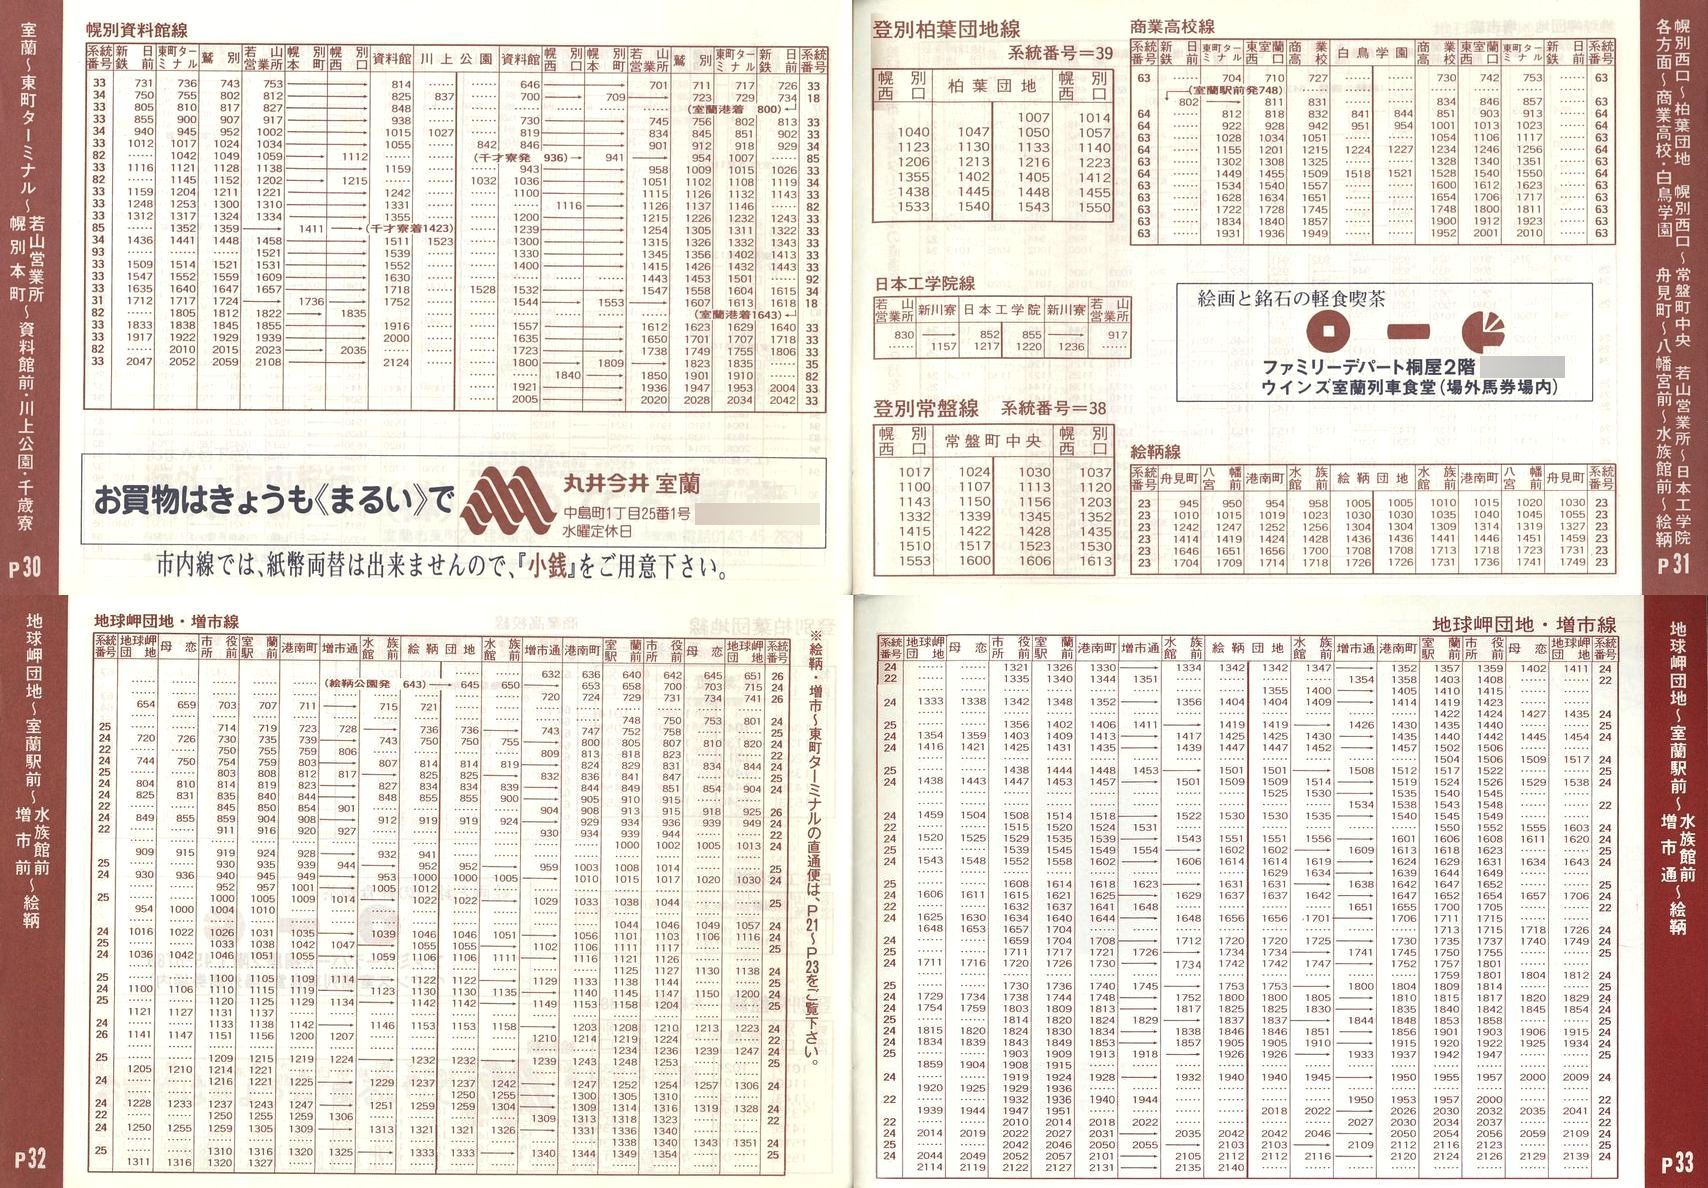 1989-04-01改正_道南バス_室蘭市内線冊子時刻表30-33